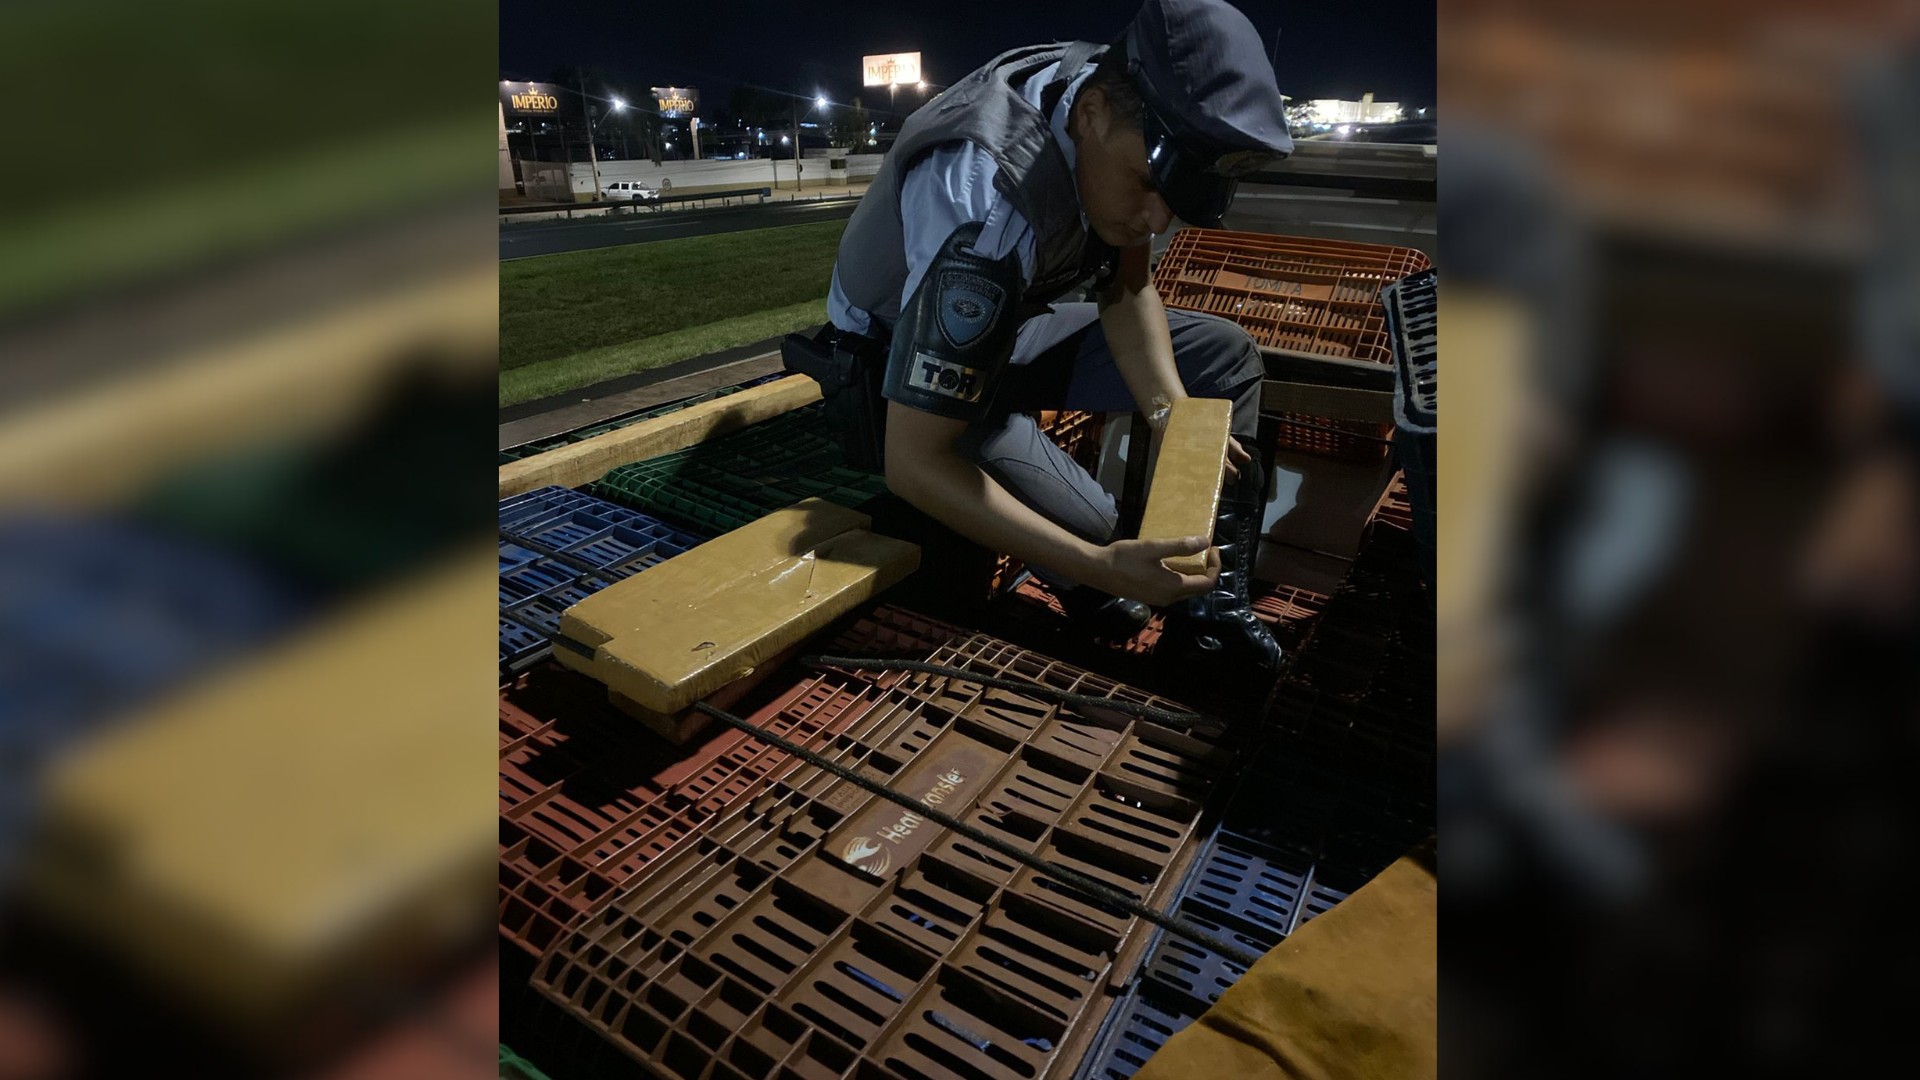 Polícia apreende 3 toneladas de maconha escondidas em carga de caixas plásticas em Catanduva